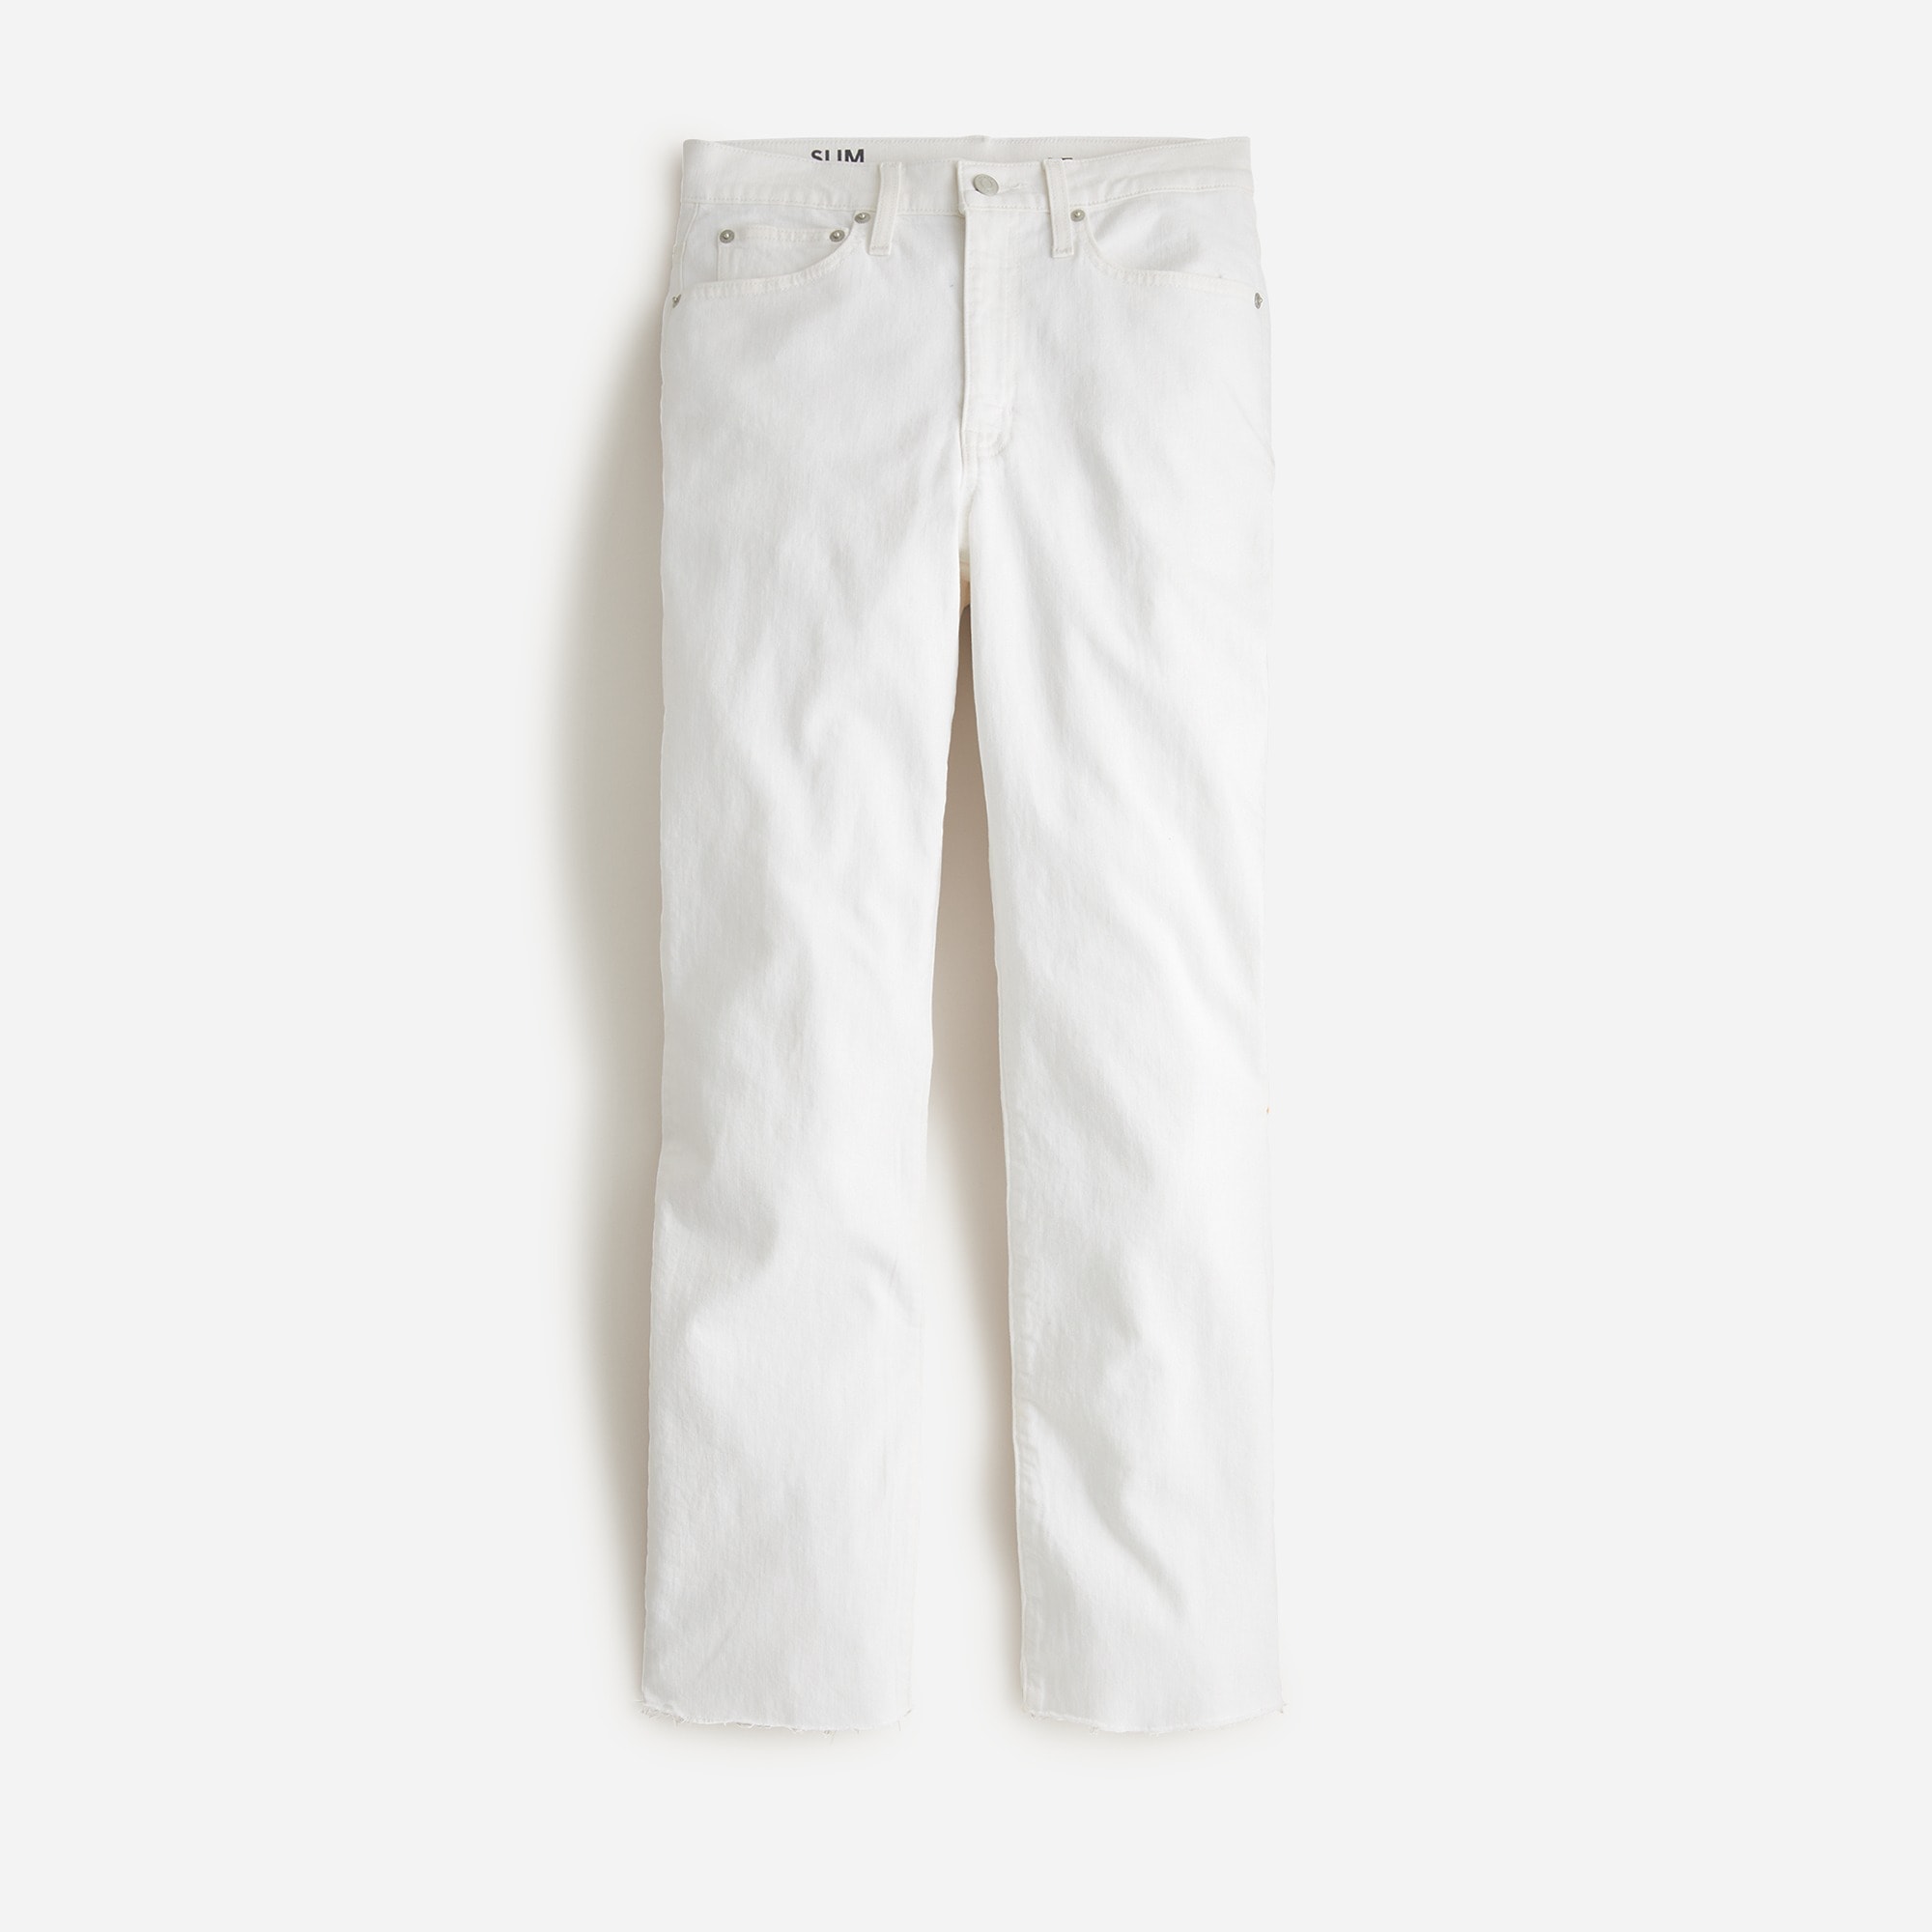  Petite slim boyfriend jean in white